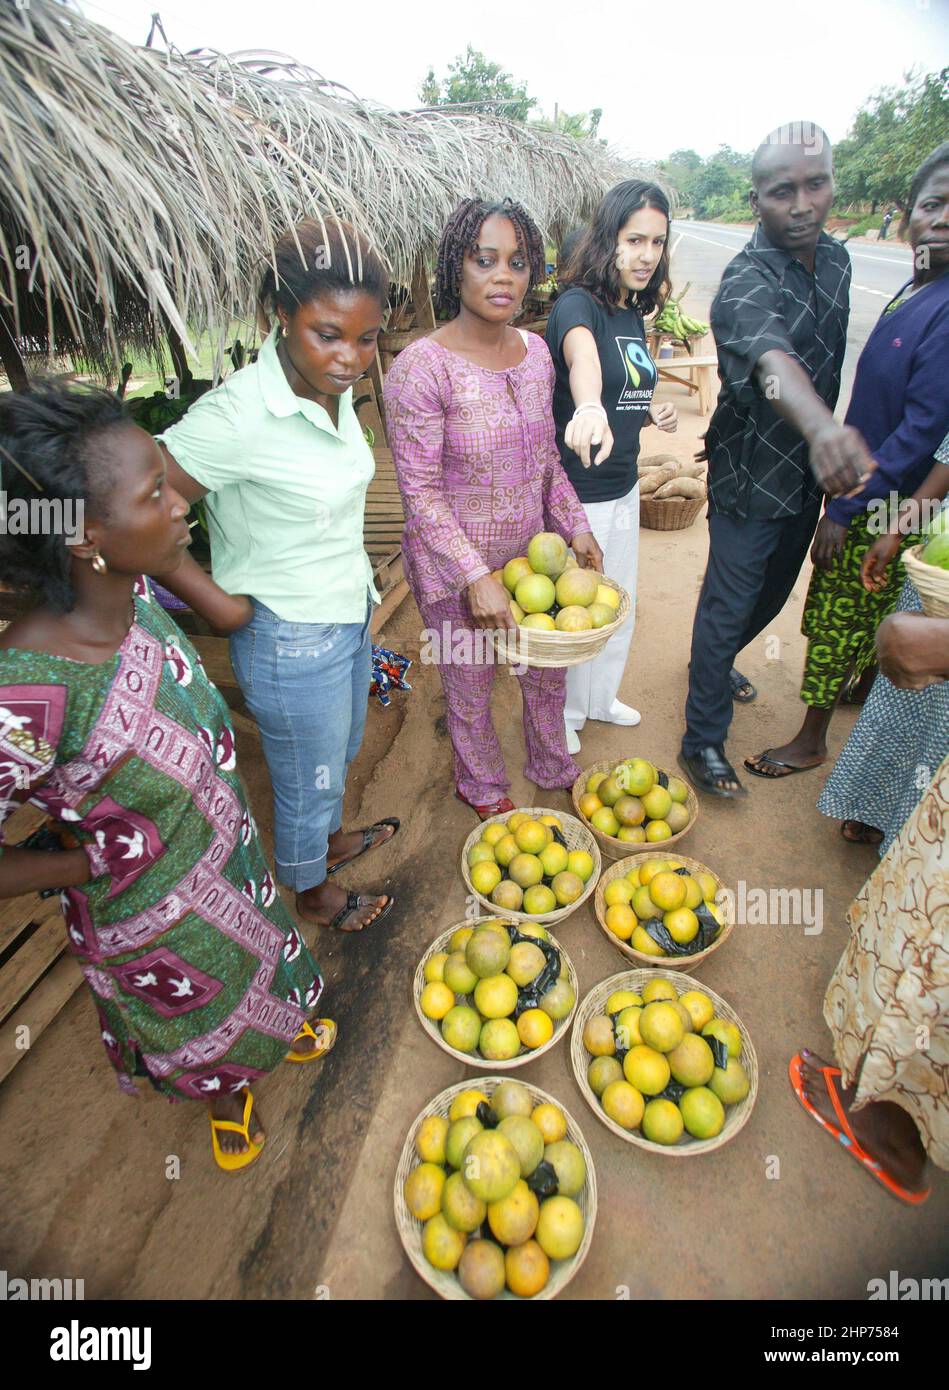 Ghanaian venditori di strada che vendono frutta e verdura al celebre scrittore di cibo Vicky Bhogal. Una sostenatrice del libro di ricette per le celebrità di cause Vicky per la campagna Make Poverty History,' A Fair Festa' nel 2005, che ha compilato e curato. Insistendo sul fatto che il 100% dei proventi va a beneficenza, il libro ha raccolto oltre £100.000 per la Fairtrade Foundation e la Make Trade Fair Campaign di Oxfam. Immagine Gary Roberts/worldwidefeatures.com Foto Stock